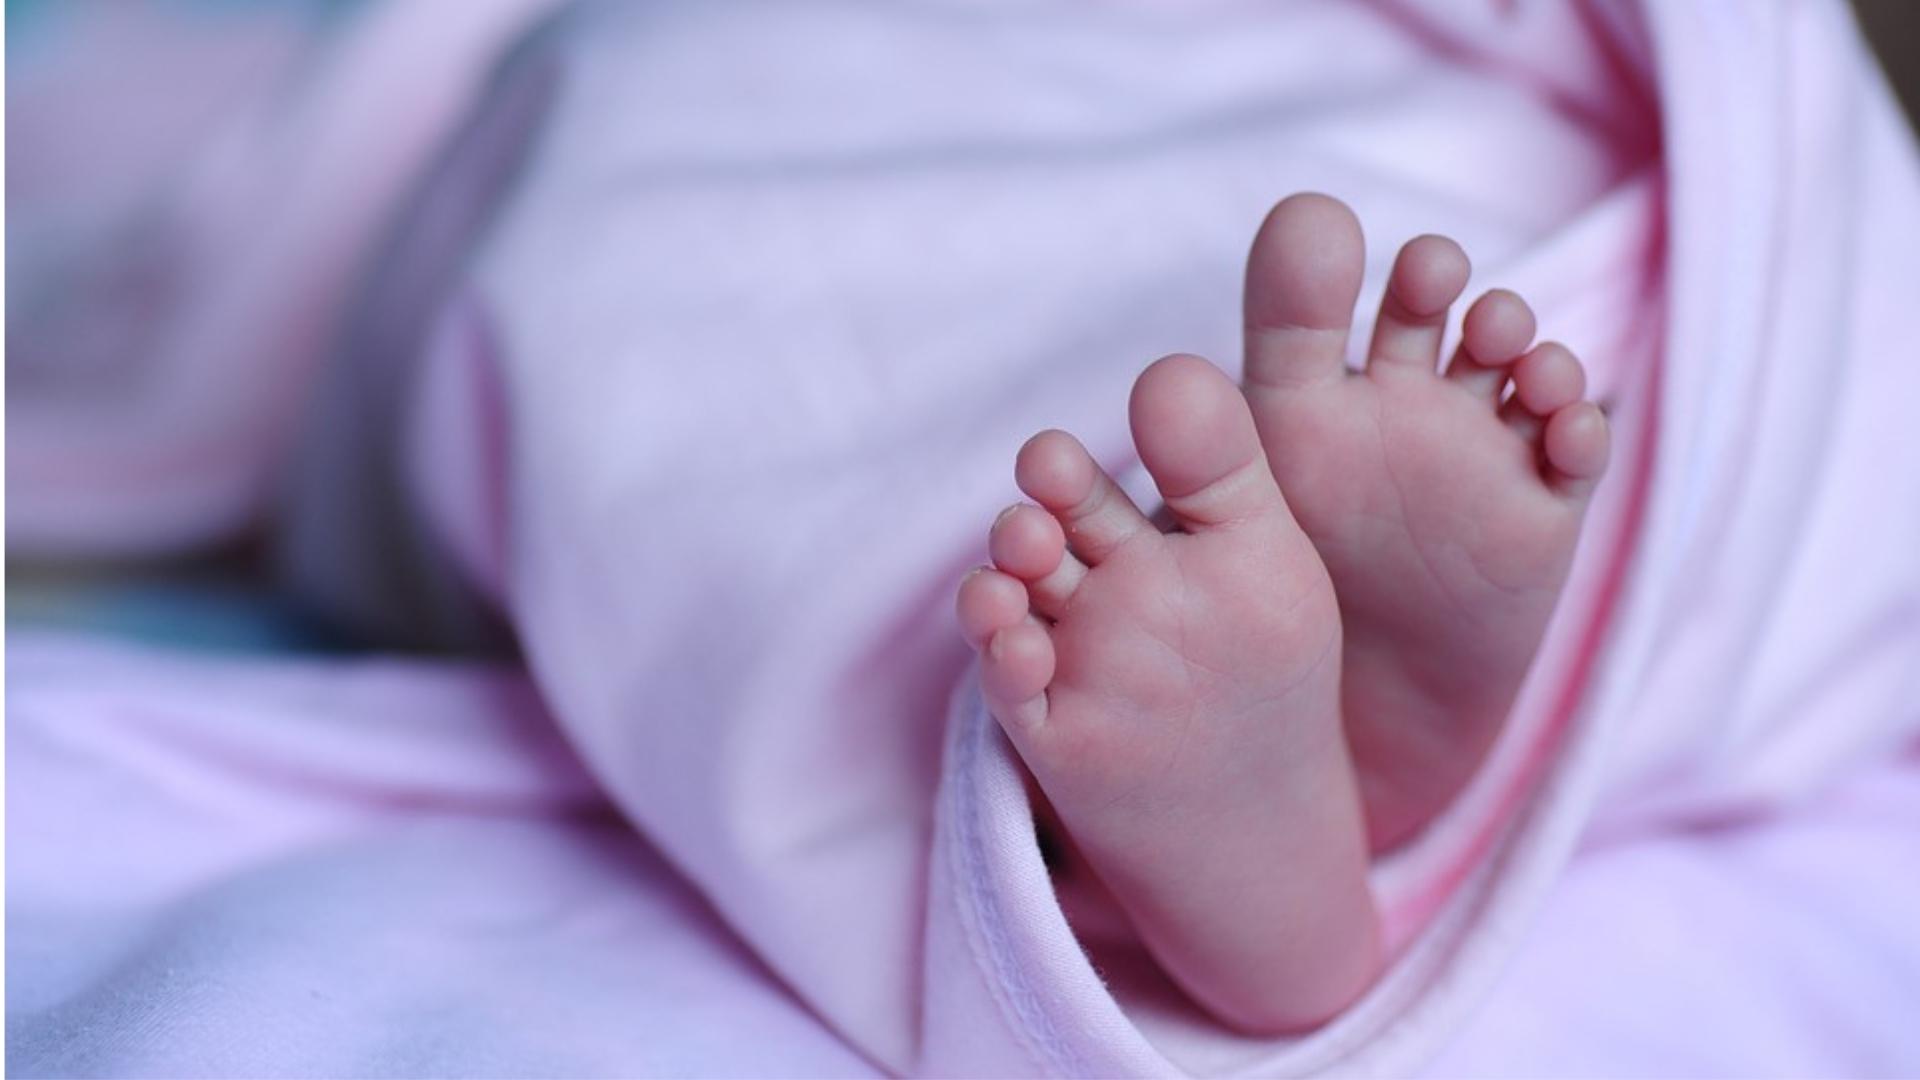 Bebé en manta. Imagen de referencia tomada de Pixabay